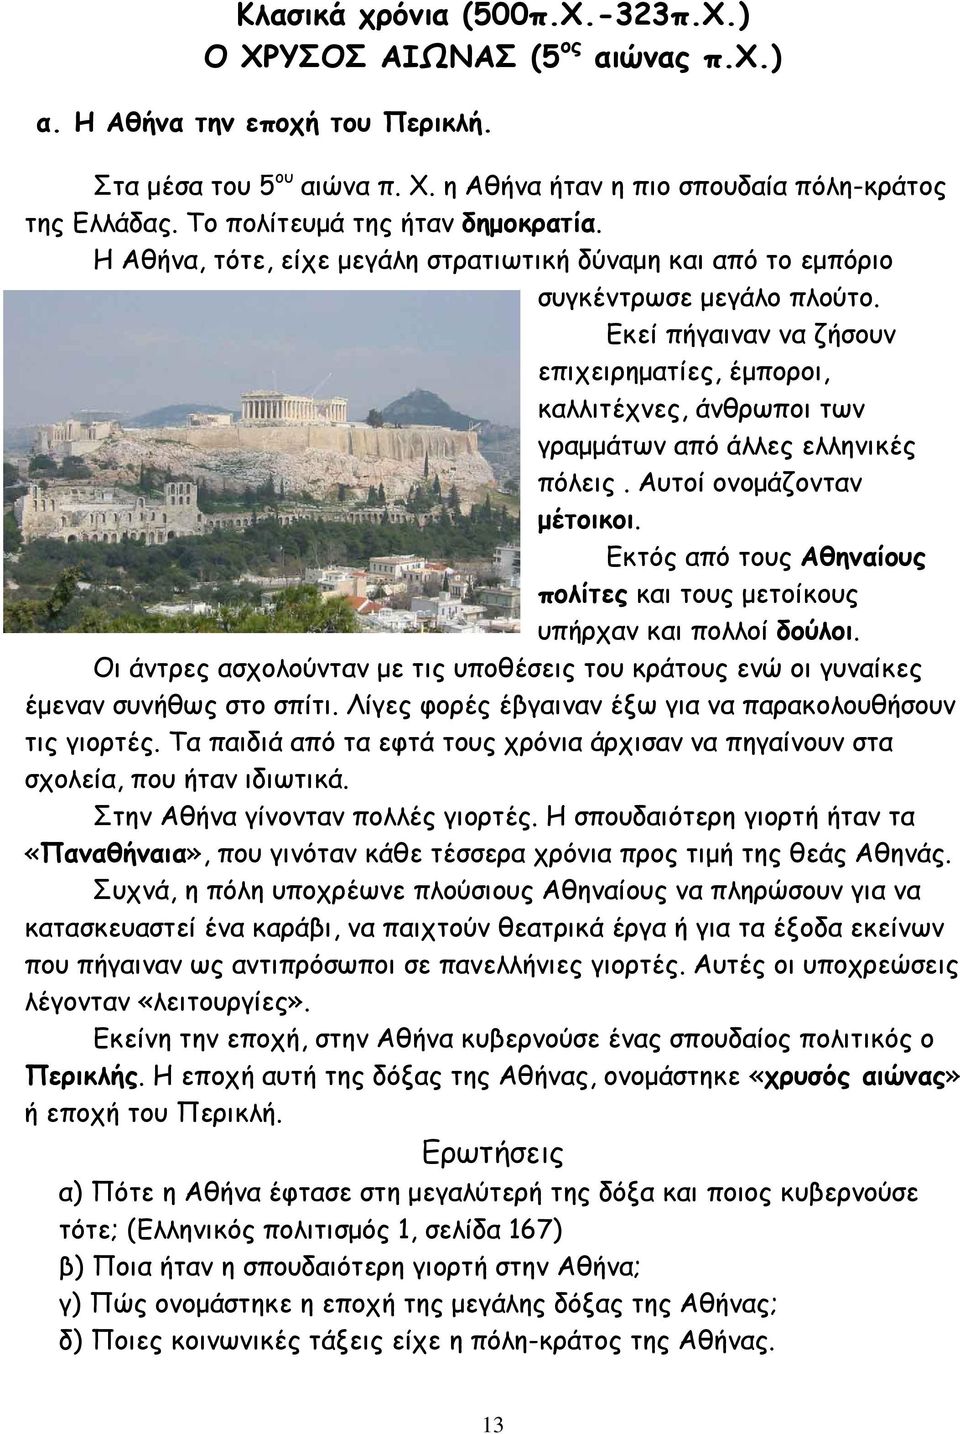 Εκεί πήγαιναν να ζήσουν επιχειρηµατίες, έµποροι, καλλιτέχνες, άνθρωποι των γραµµάτων από άλλες ελληνικές πόλεις. Αυτοί ονοµάζονταν µέτοικοι.